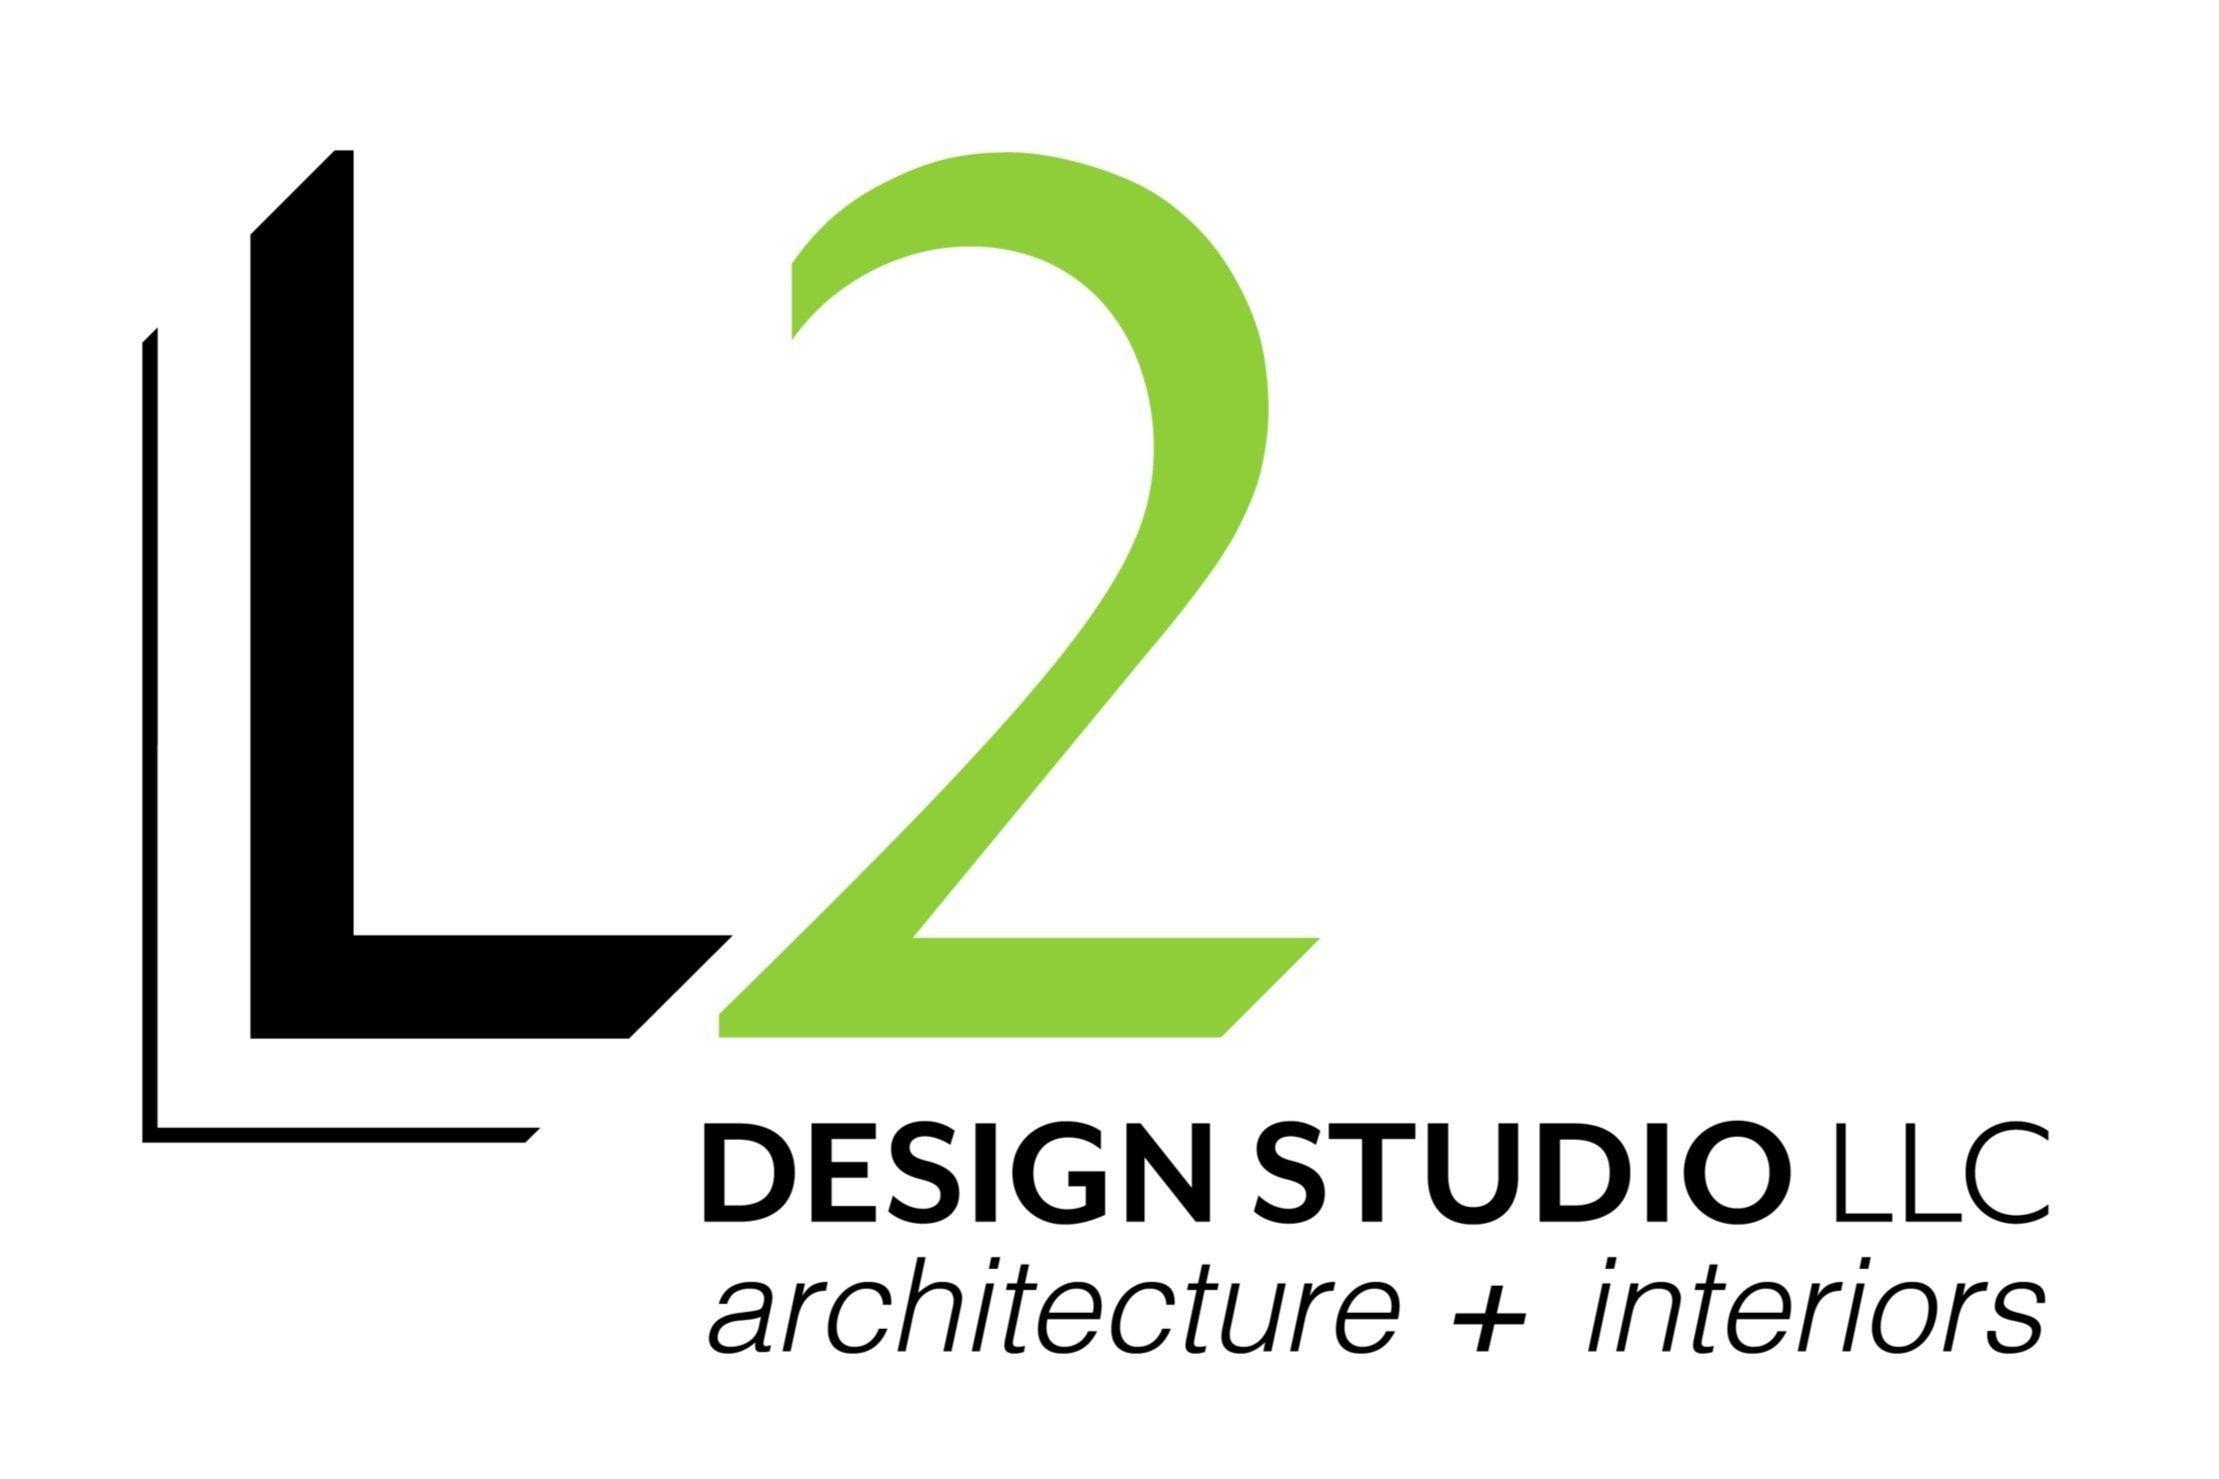 L2 Design Studio LLC - architecture + interiors